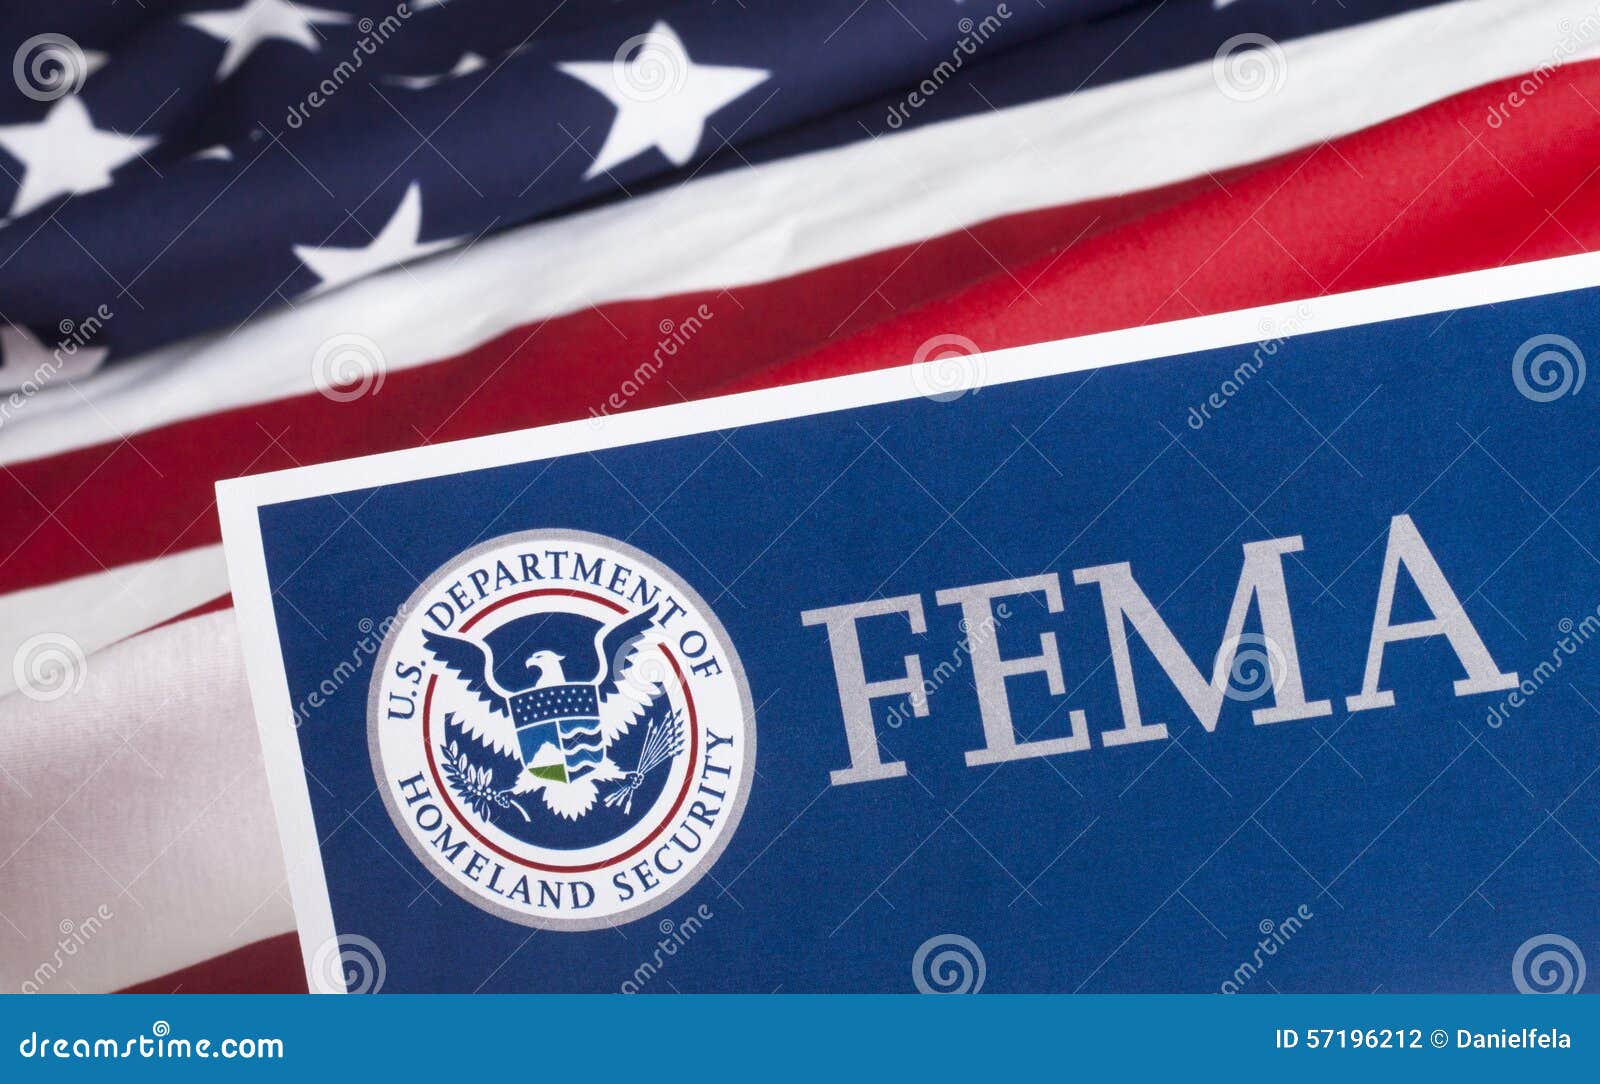 fema us homeland security form